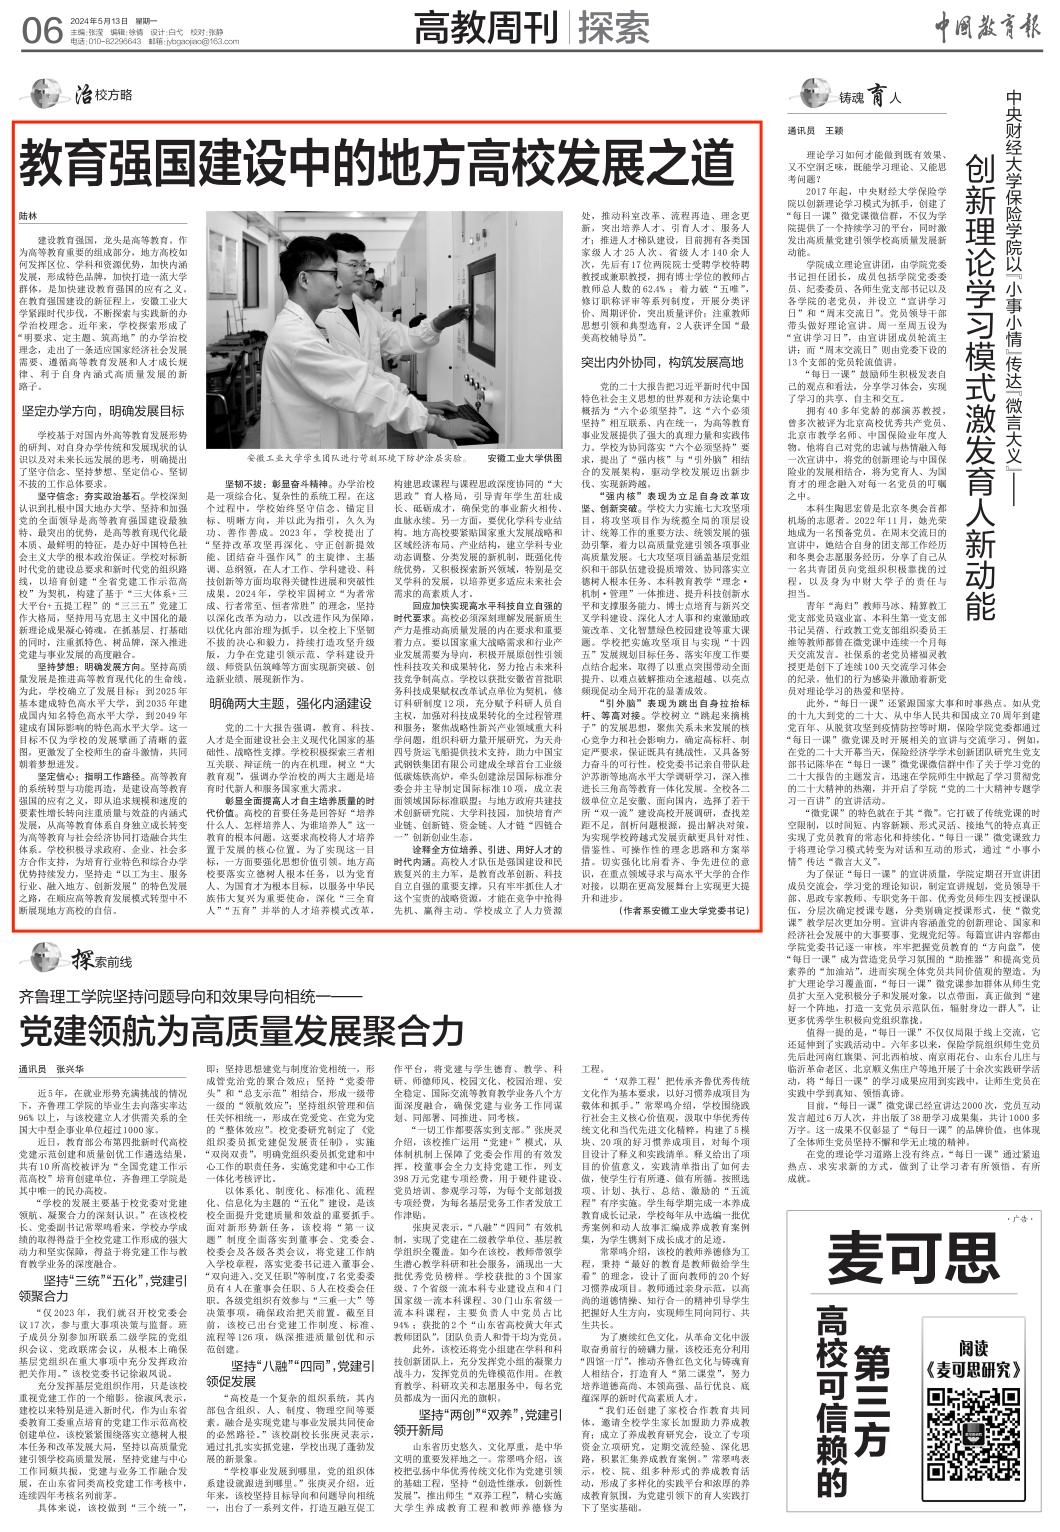 校党委书记陆林在《中国教育报》发表署名文章